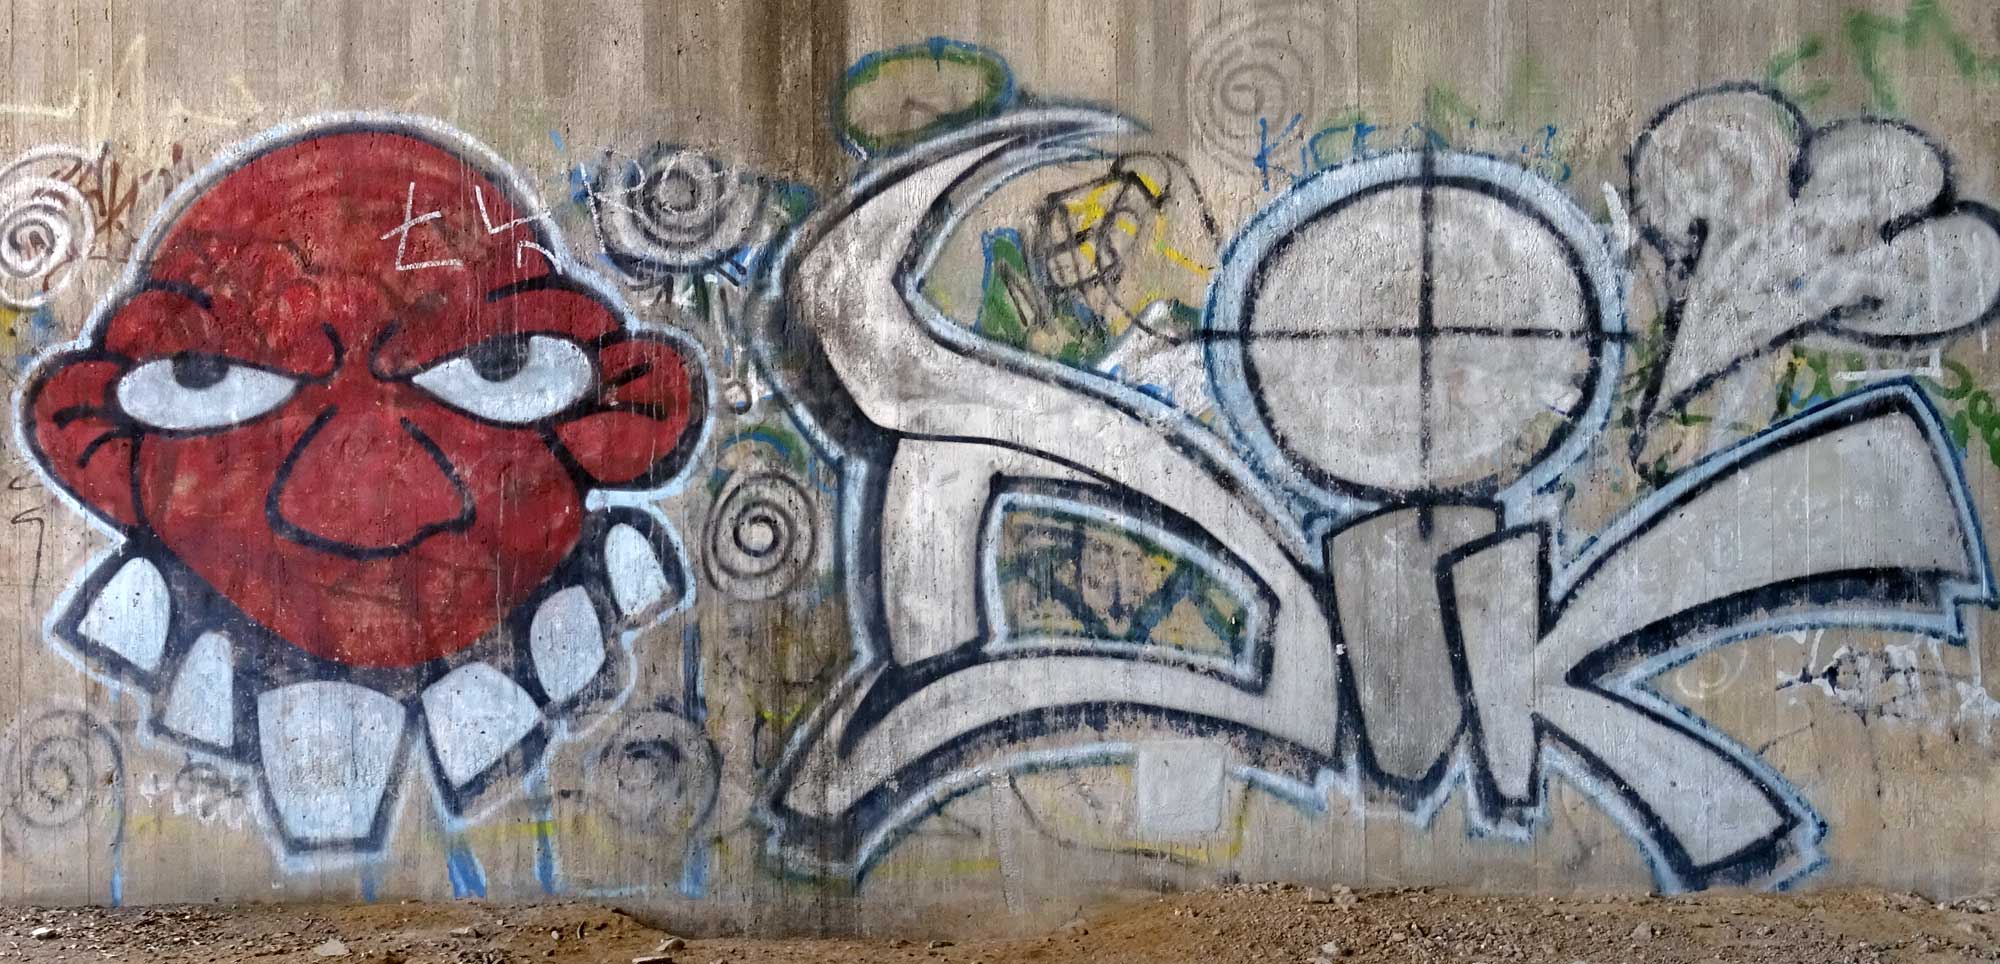 Graffiti unter der Talbrücke Worms-Pfeddersheim